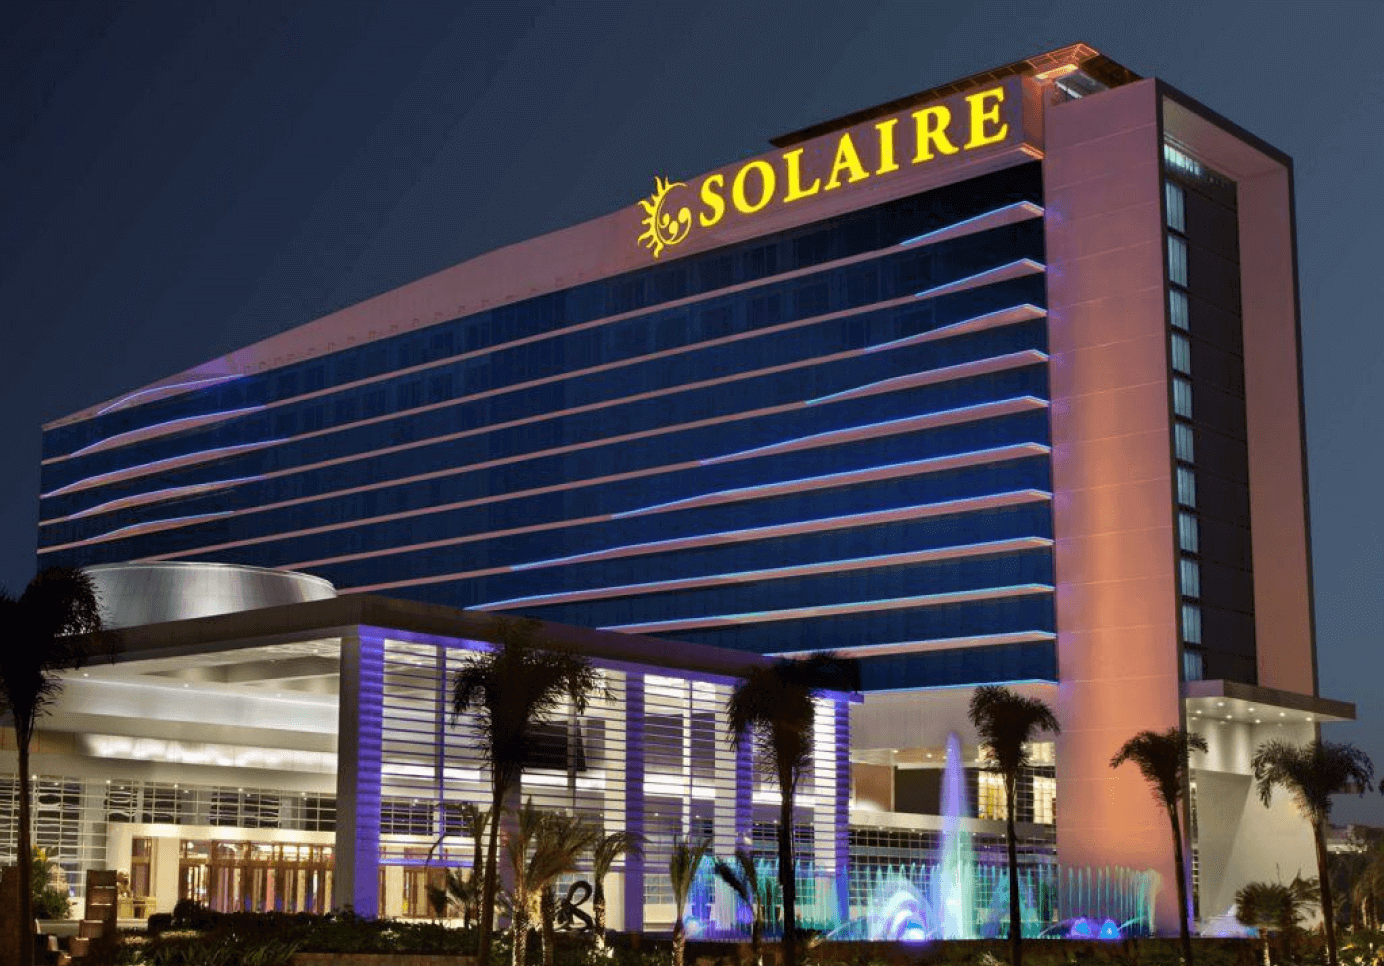 solaire resort casino building 1 1 1